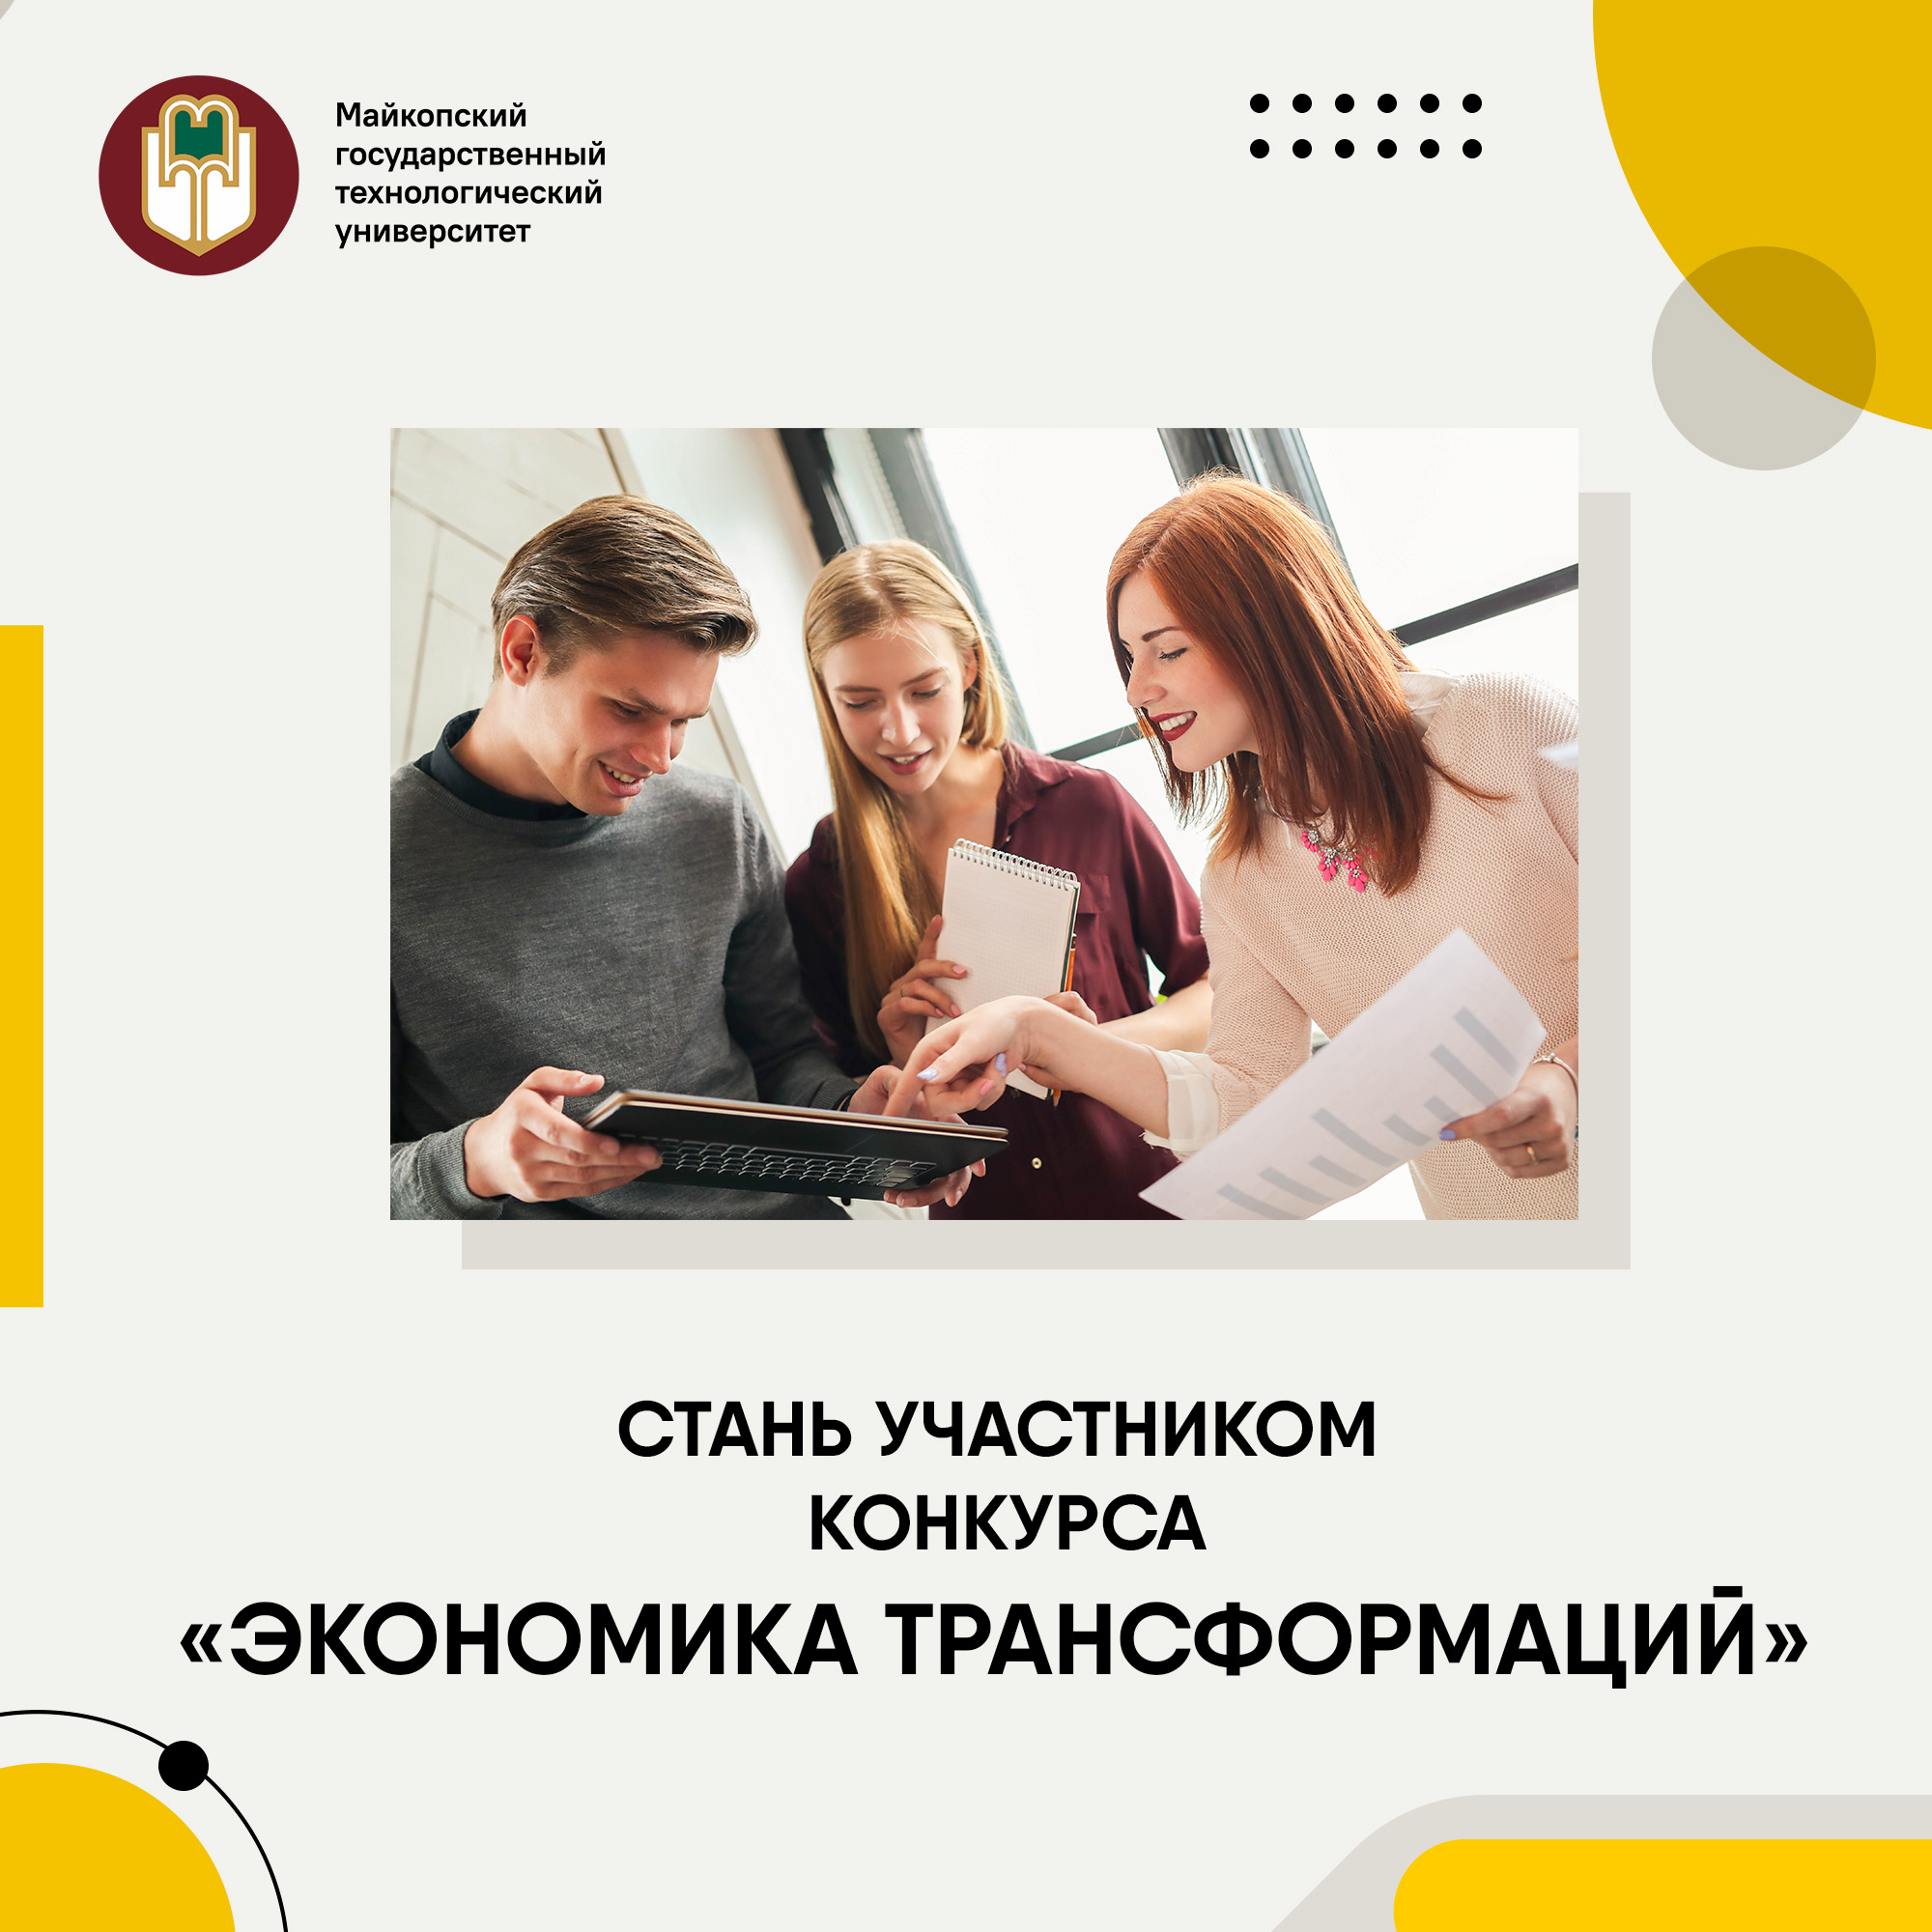 Ведется прием заявок на конкурс «Экономика трансформаций» с призовым фондом 3 000 000 рублей!